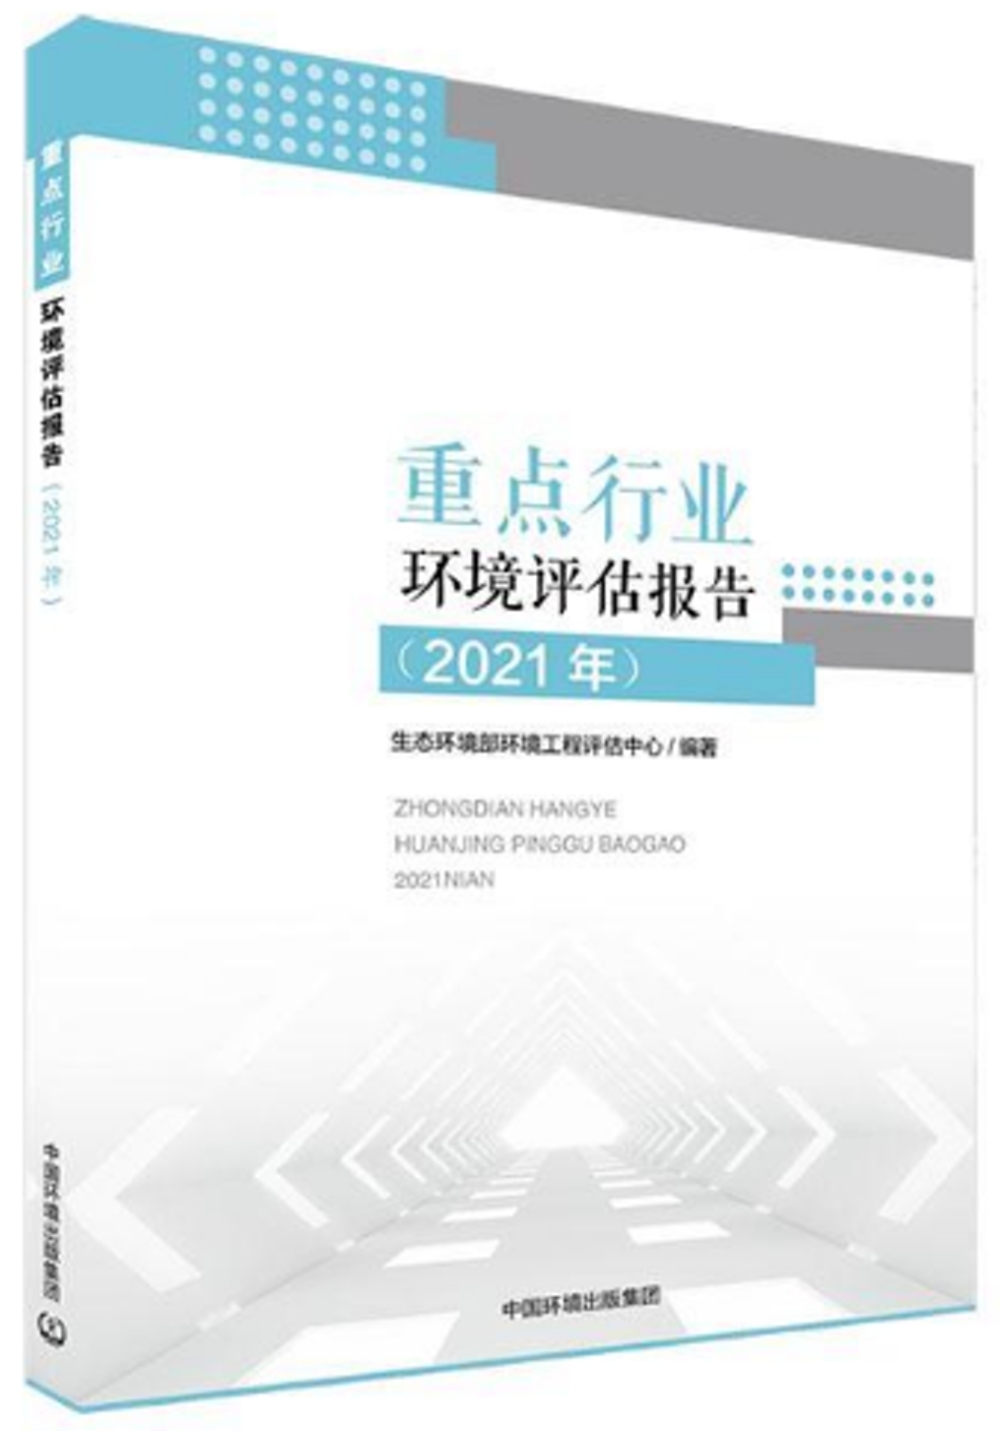 重點行業環境評估報告（2021年）